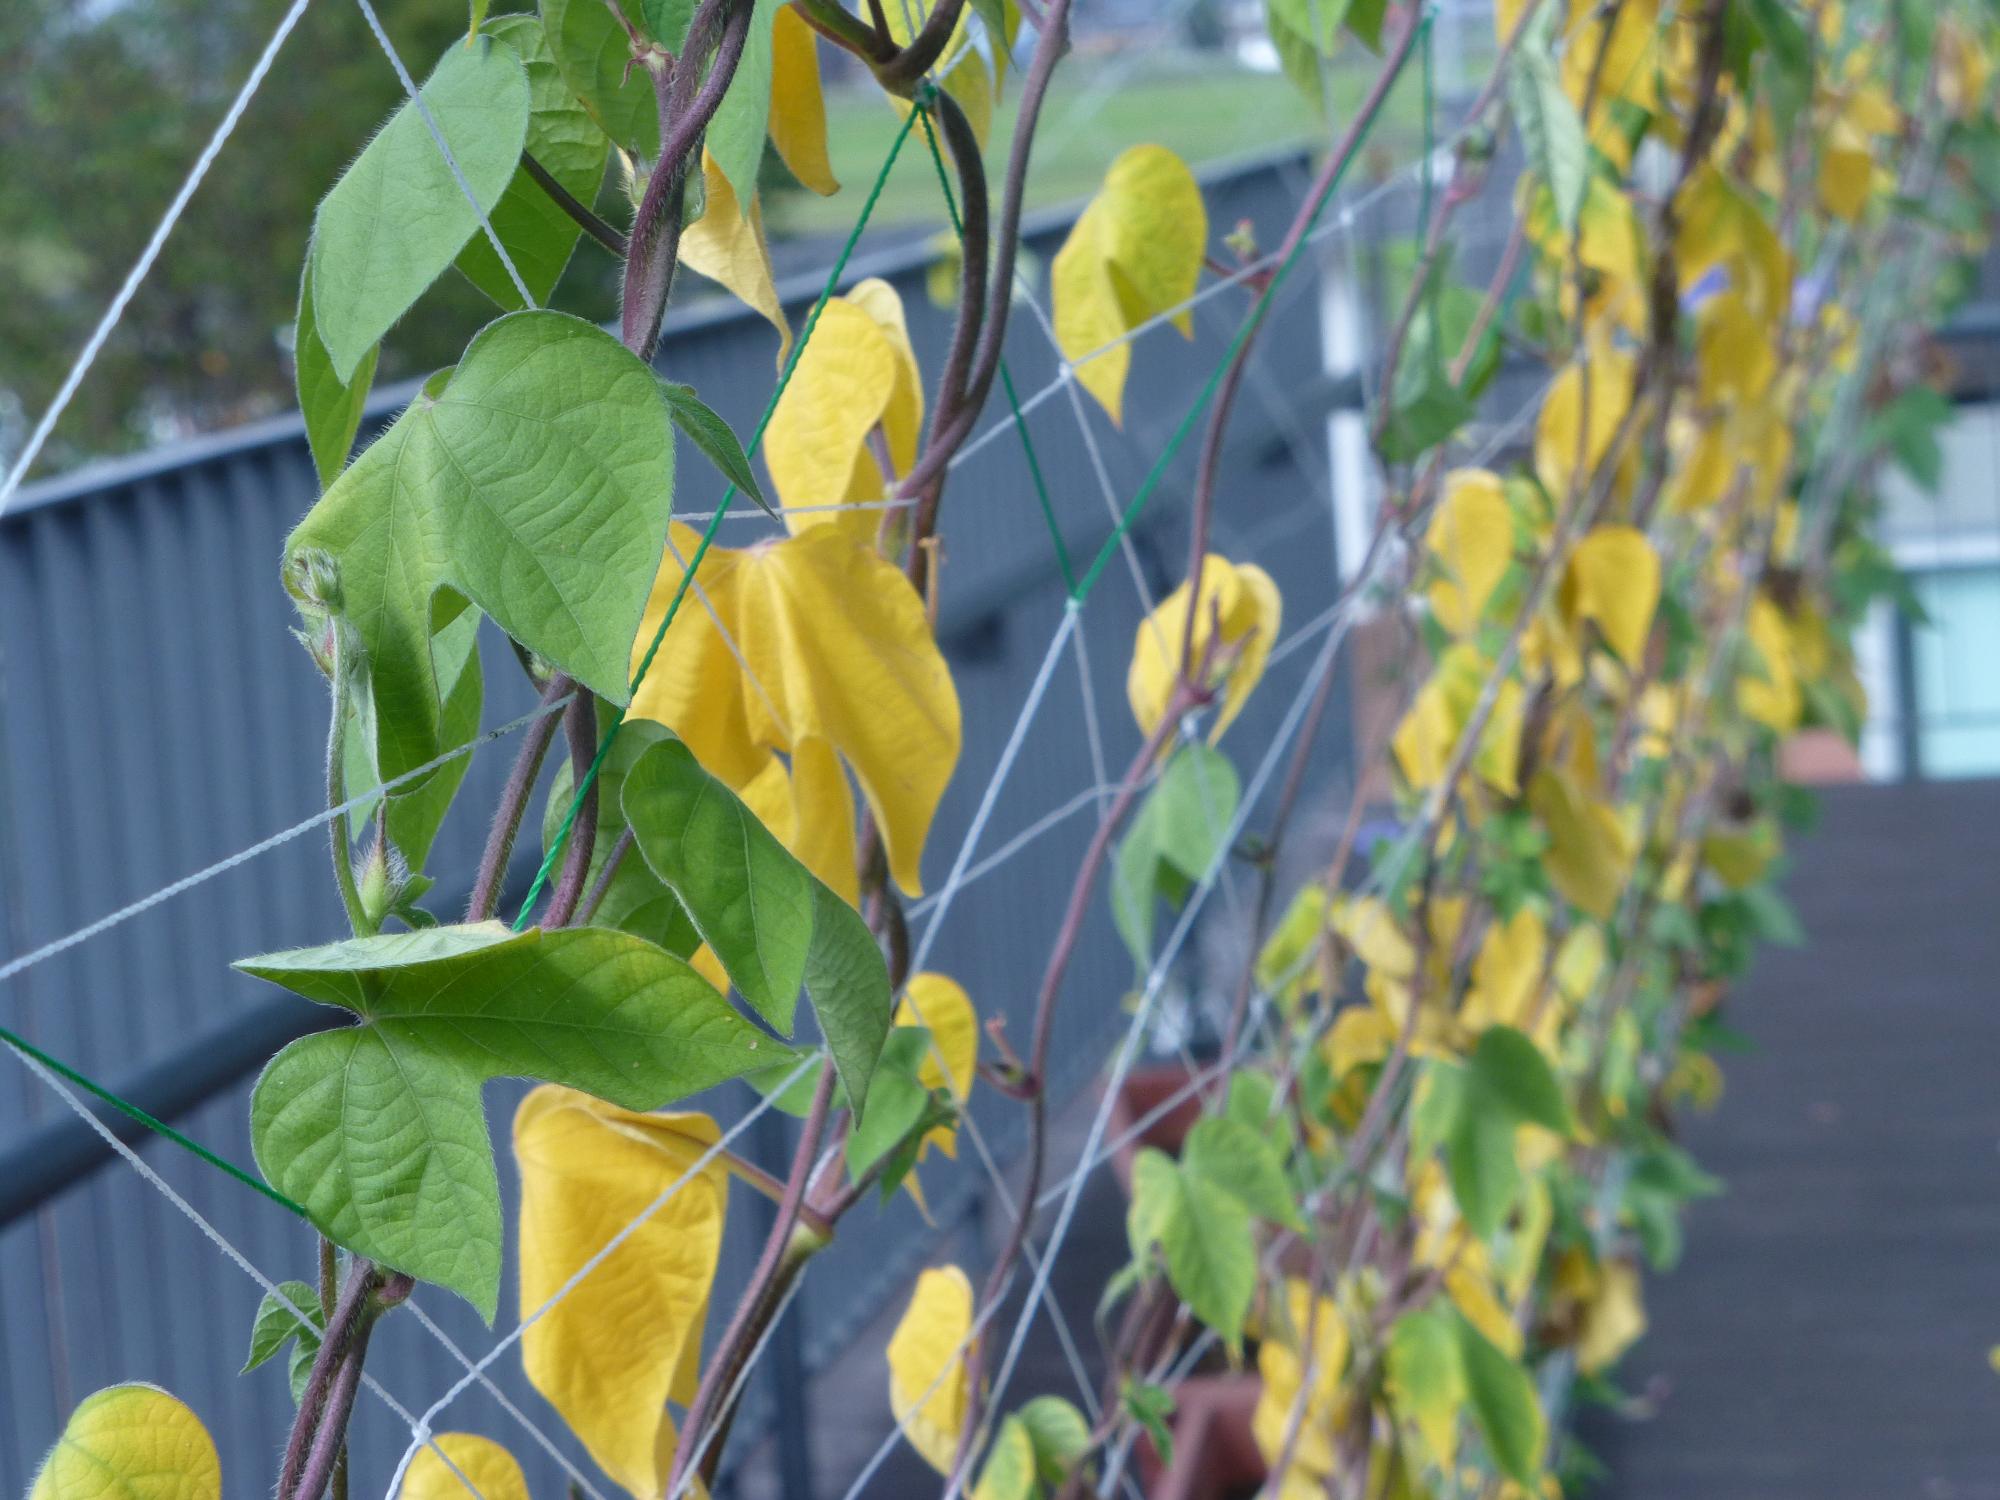 黄色の葉と緑の葉でできたグリーンカーテンの写真